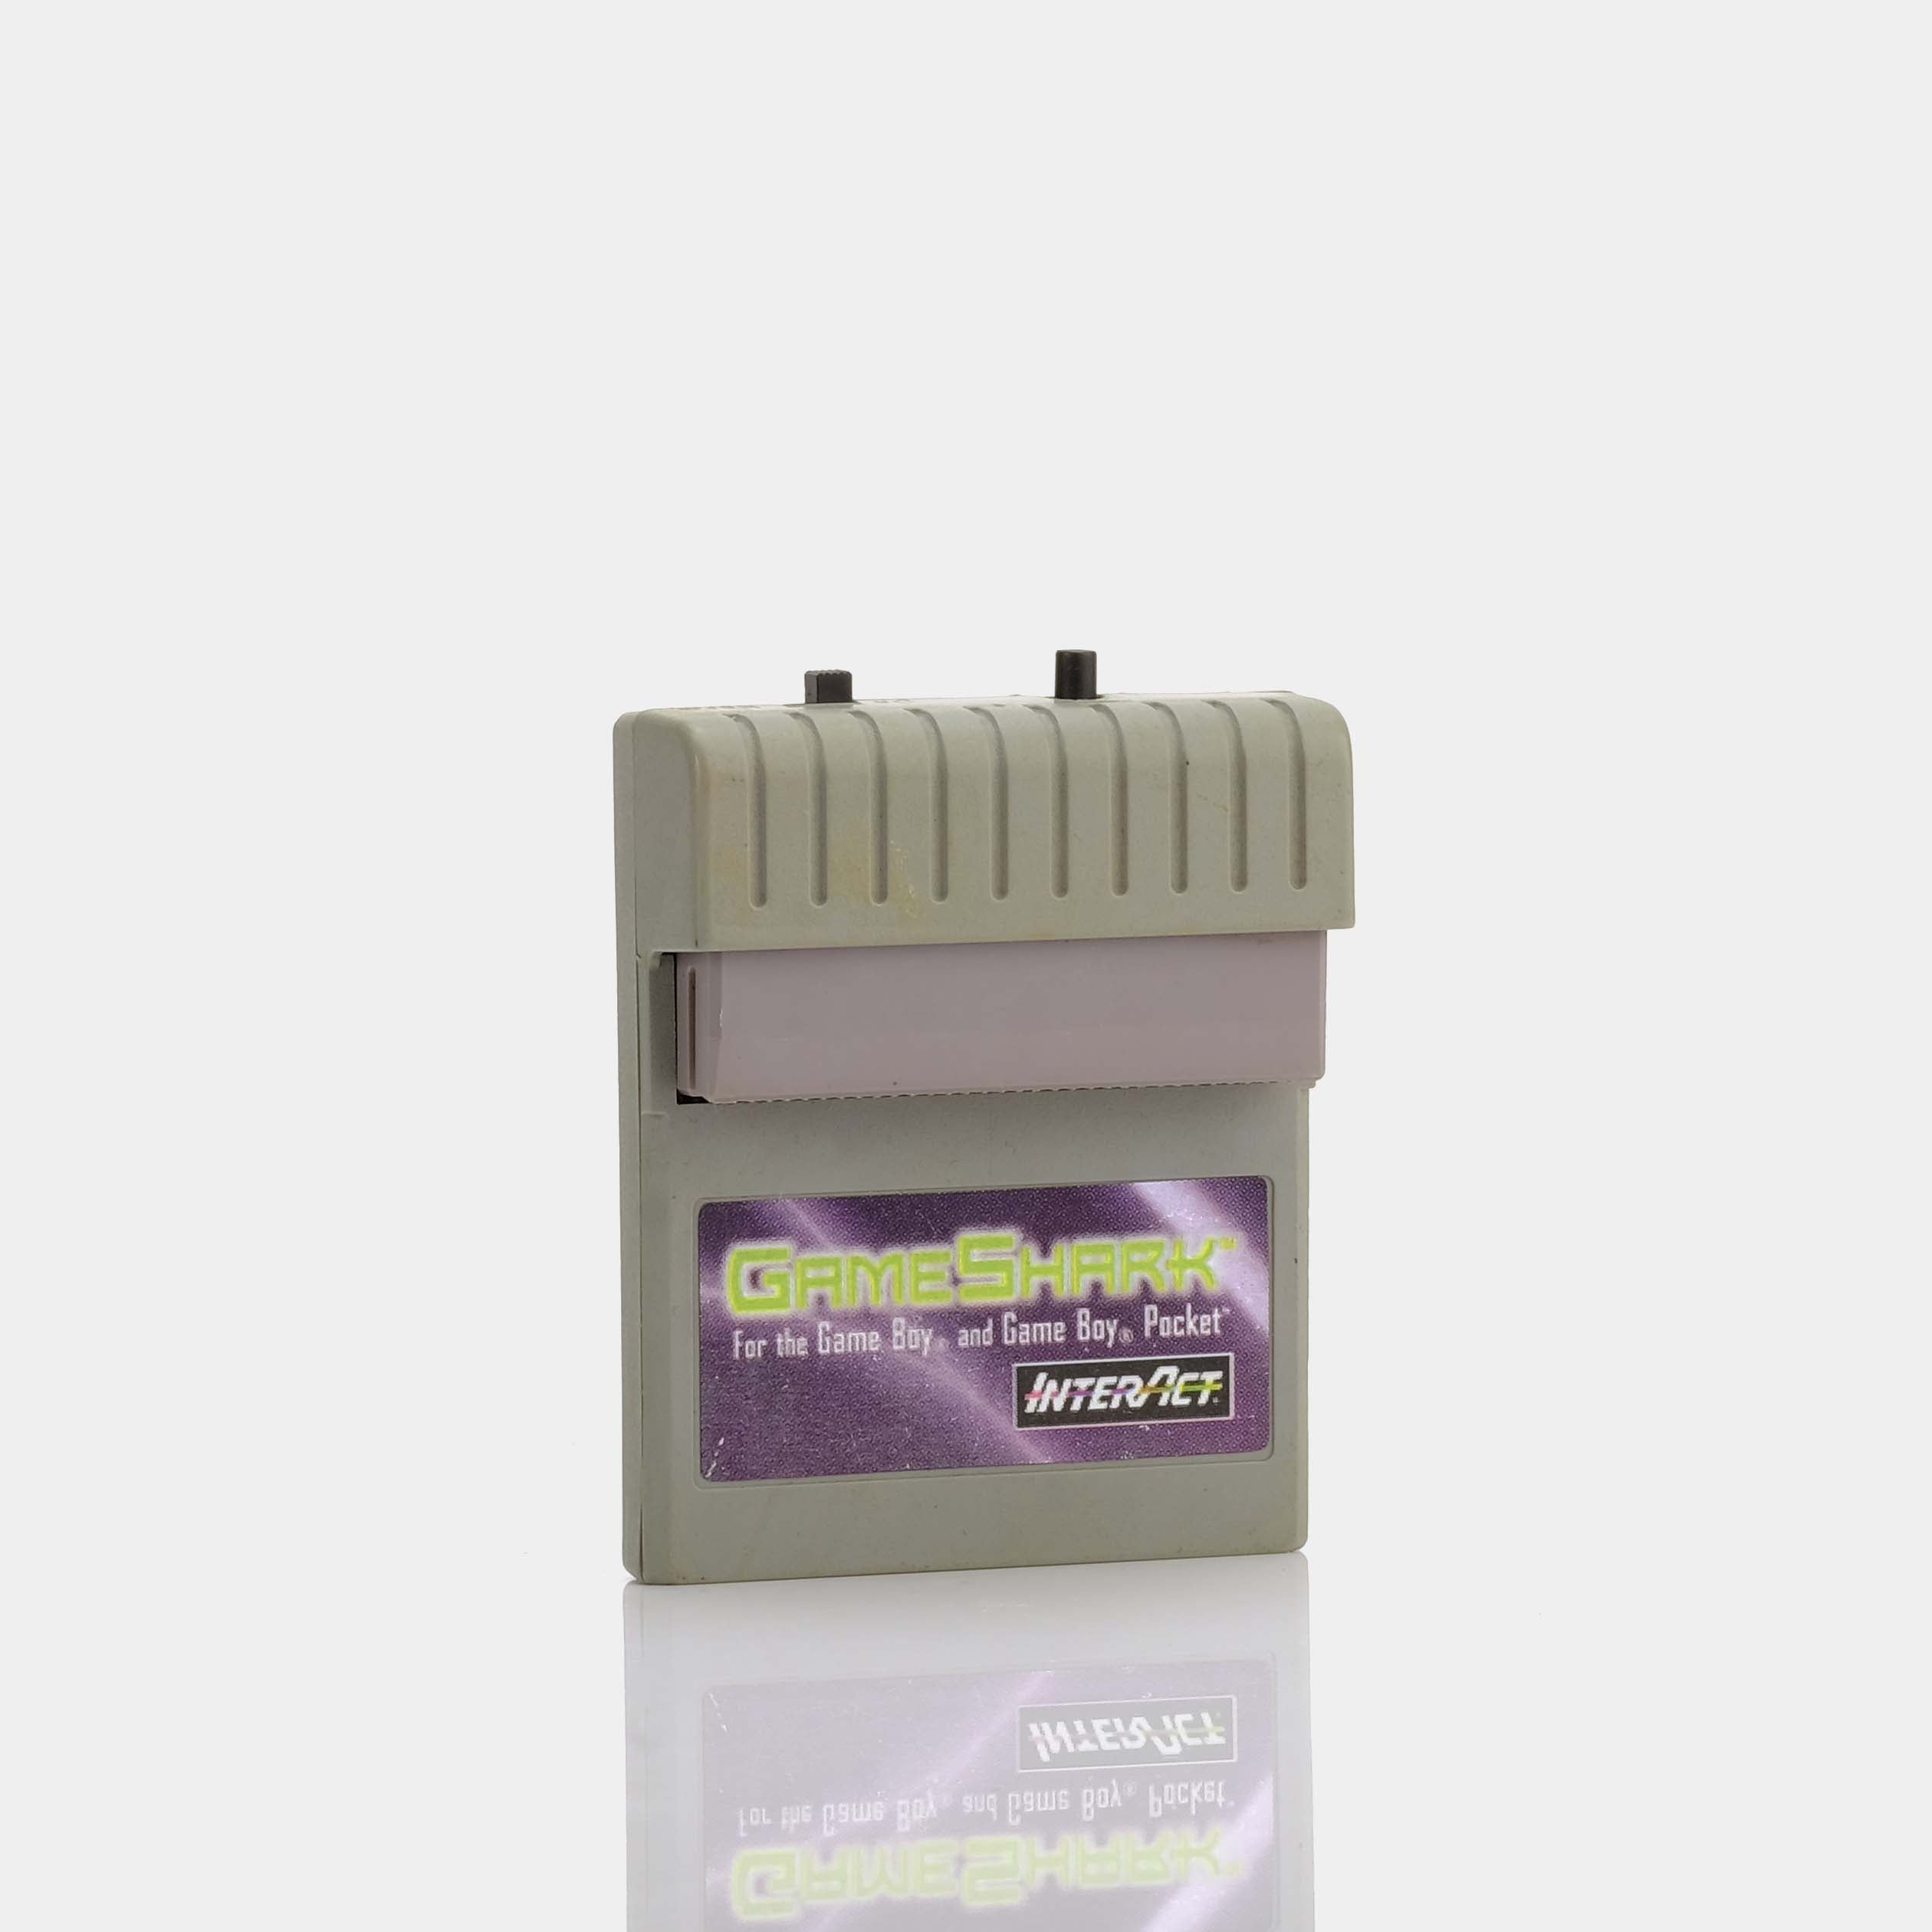 GameShark (1998) Game Boy Cheat Code Adaptor